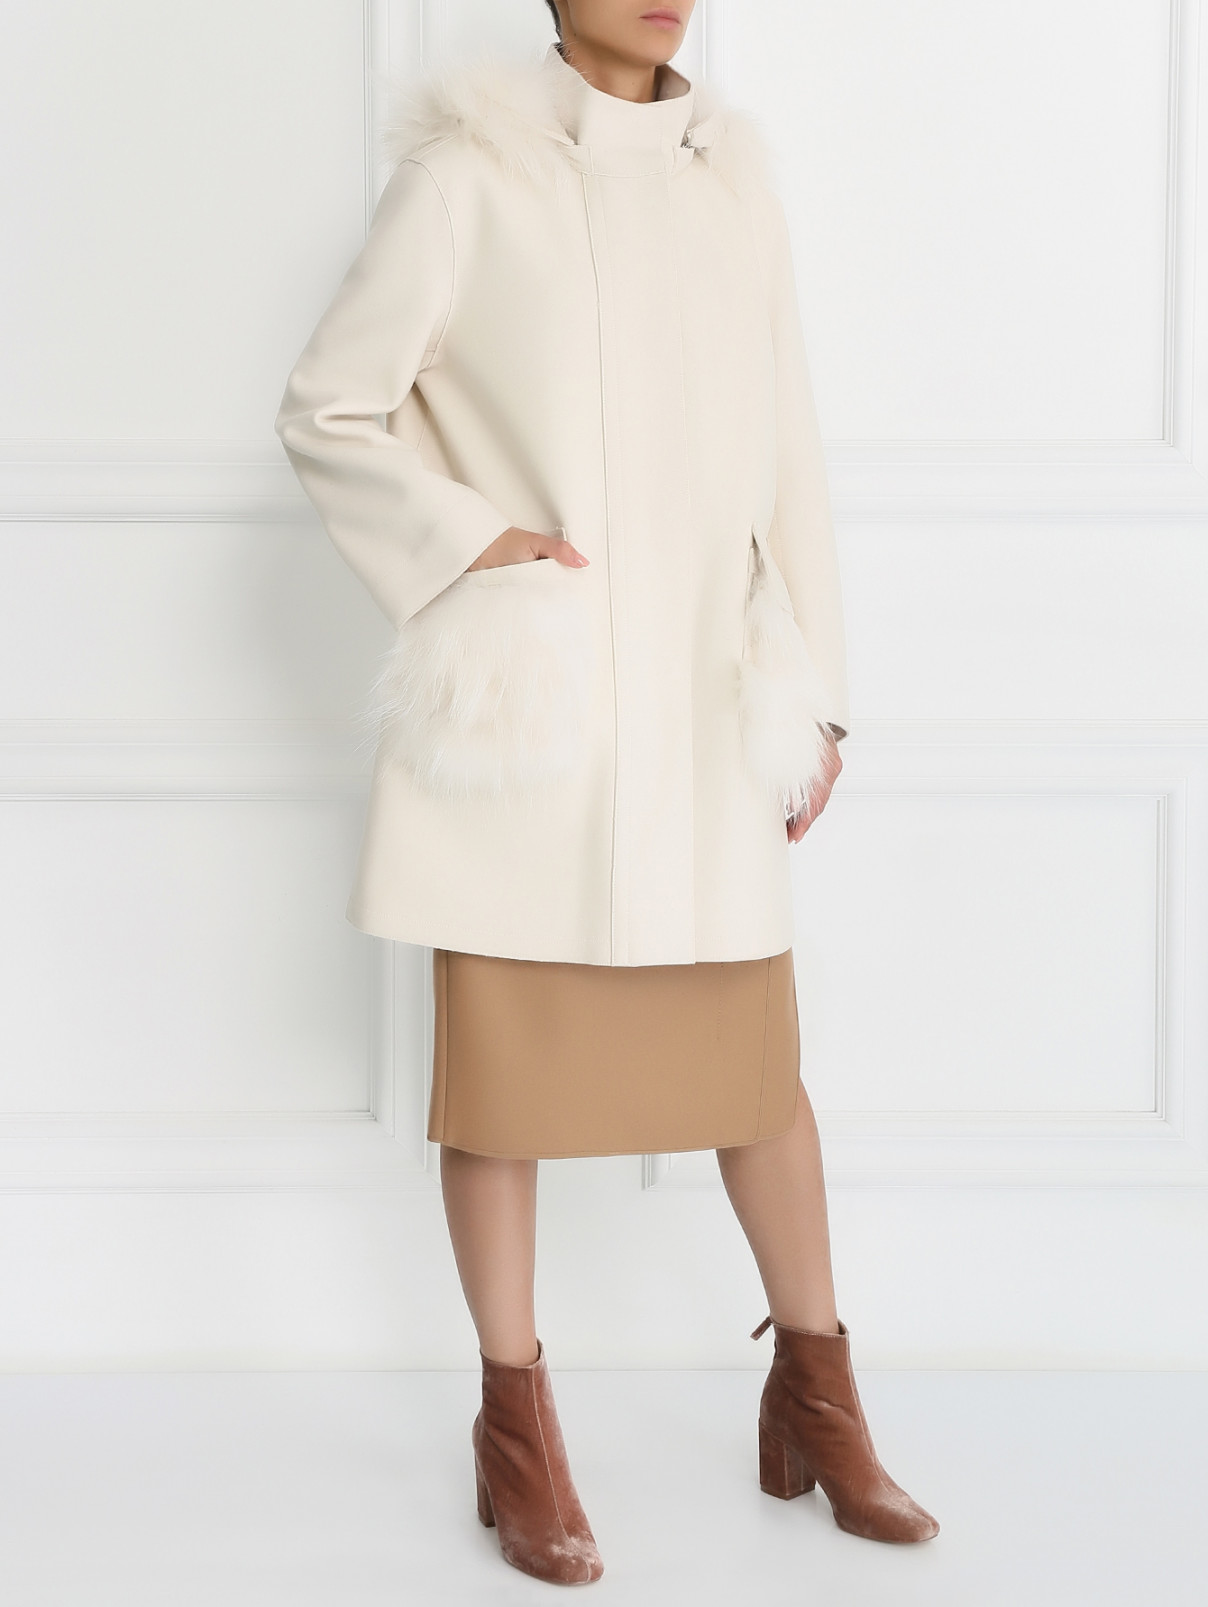 Пальто из шерсти с меховым воротником и карманами Ermanno Scervino  –  Модель Общий вид  – Цвет:  Белый